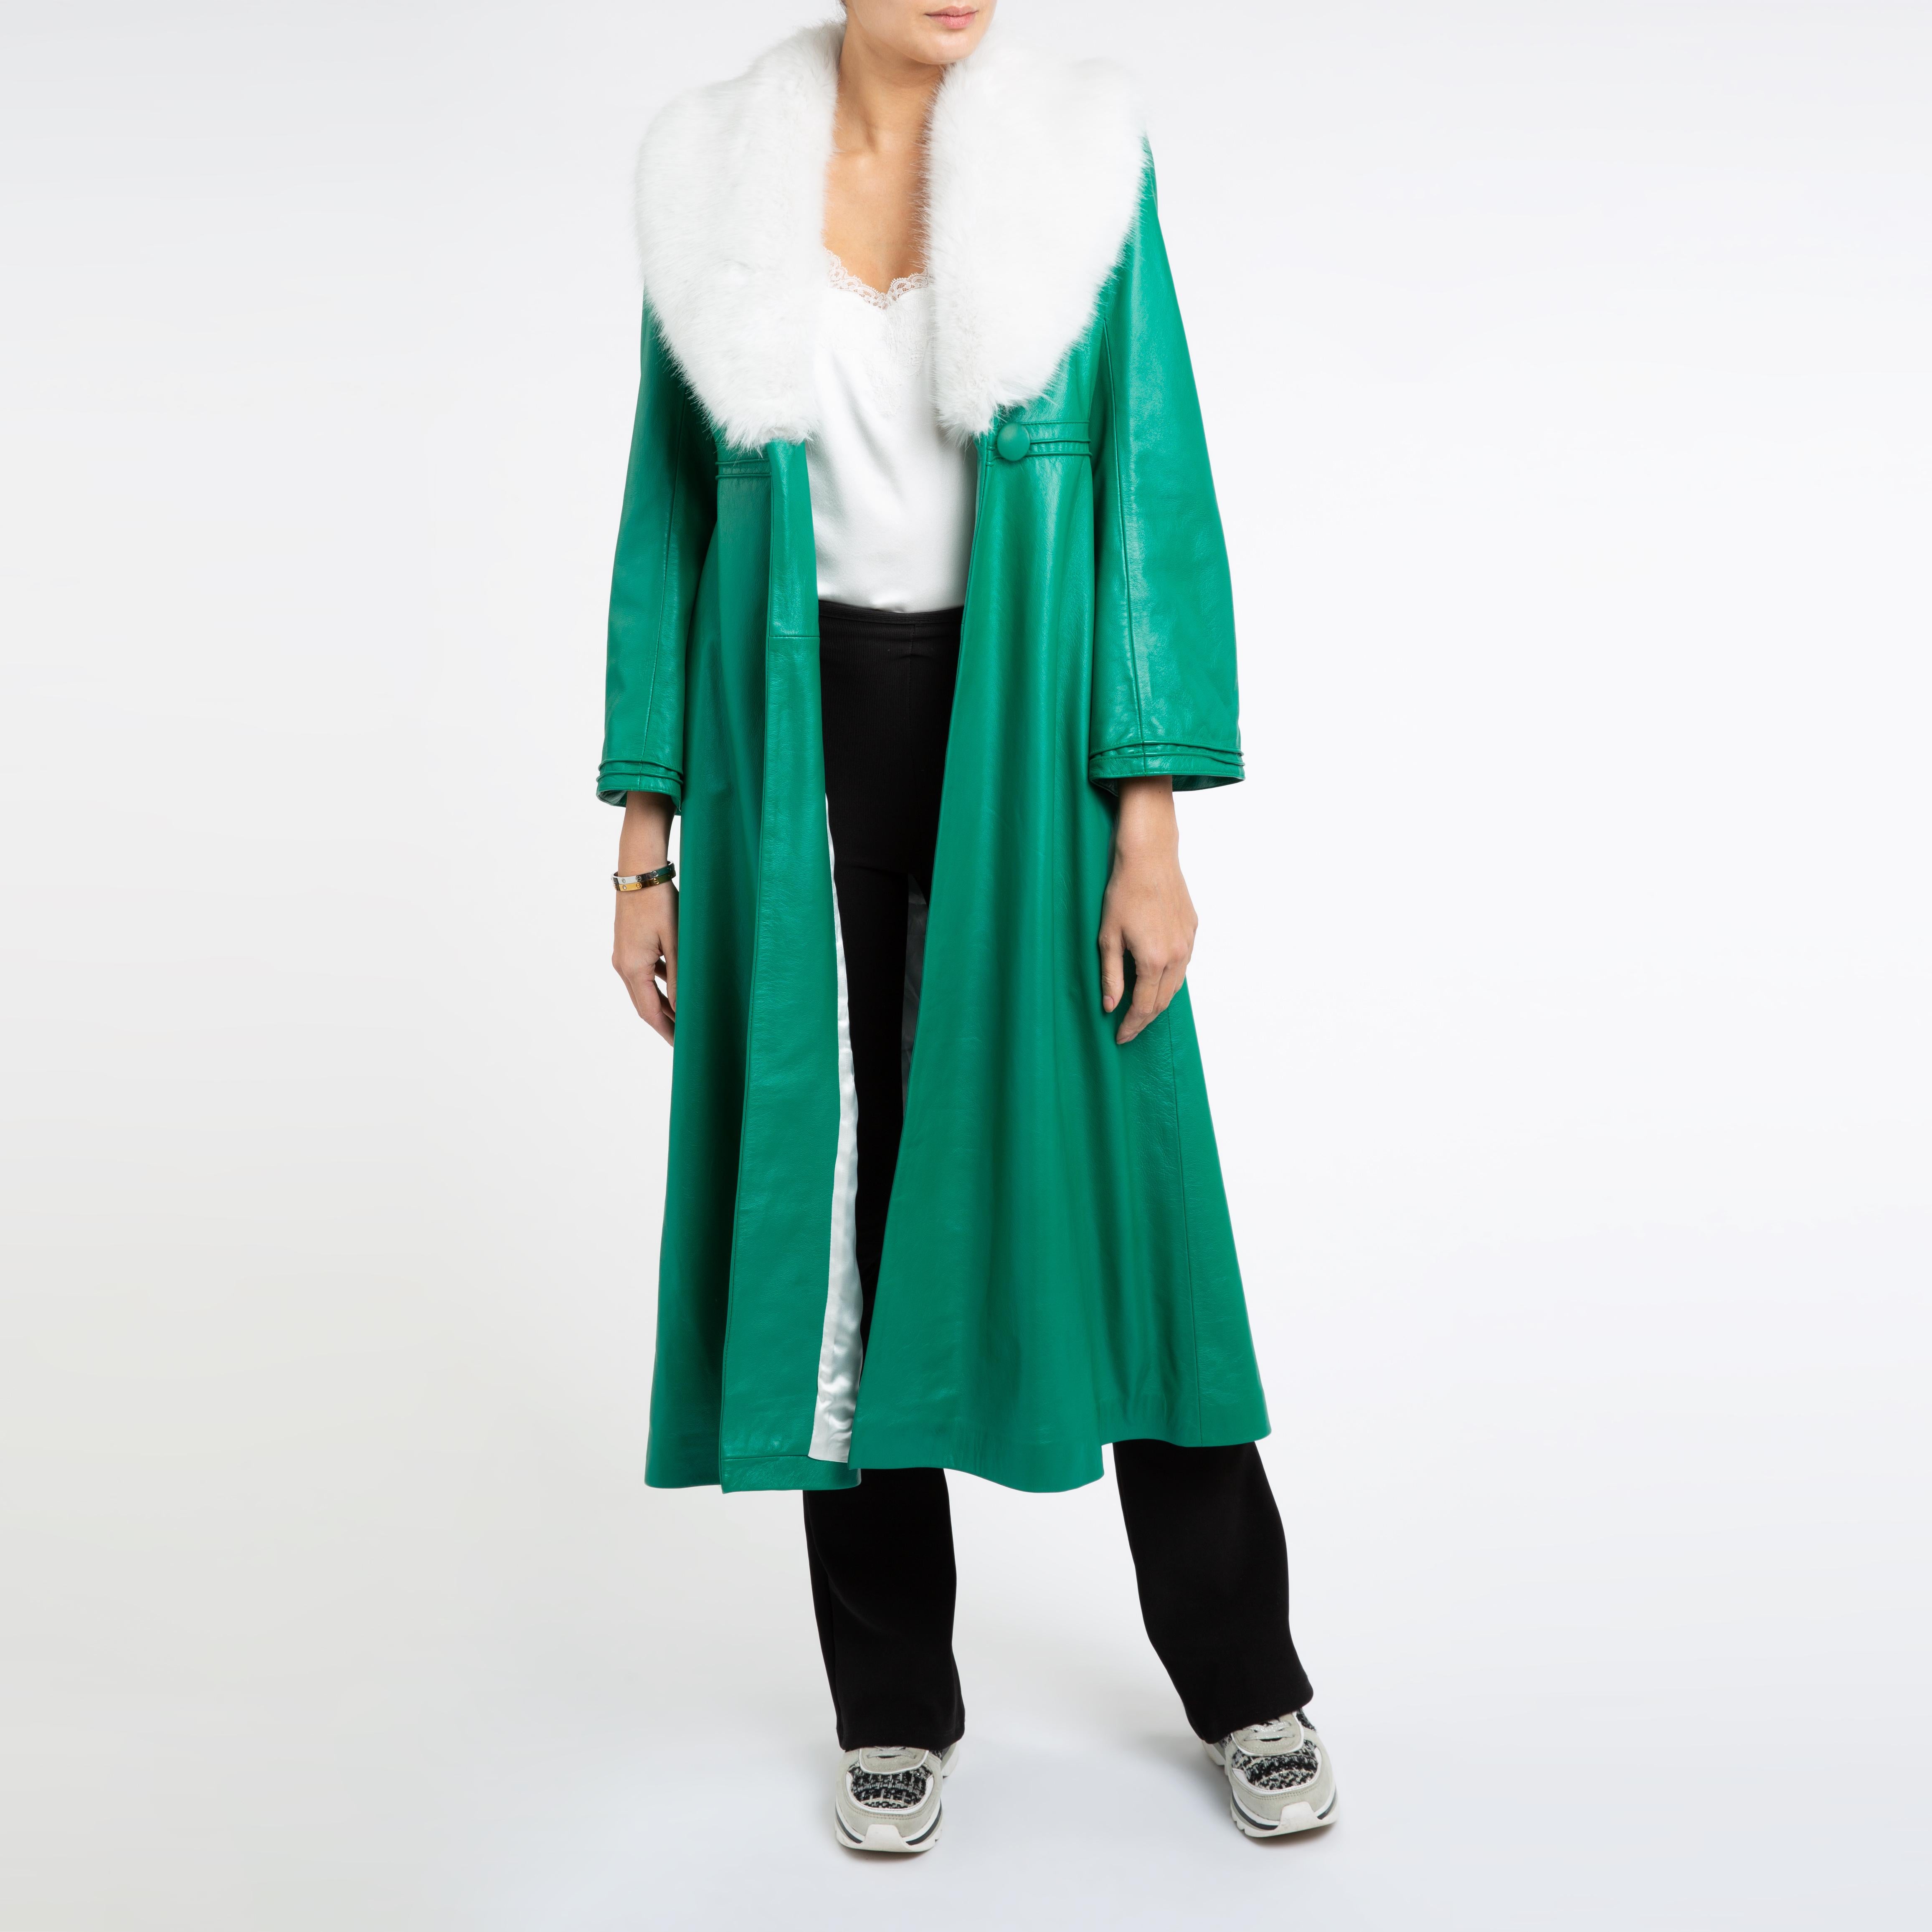 Verheyen London Edward Leather Coat in Green & White Faux Fur - Size 8 UK  For Sale 6